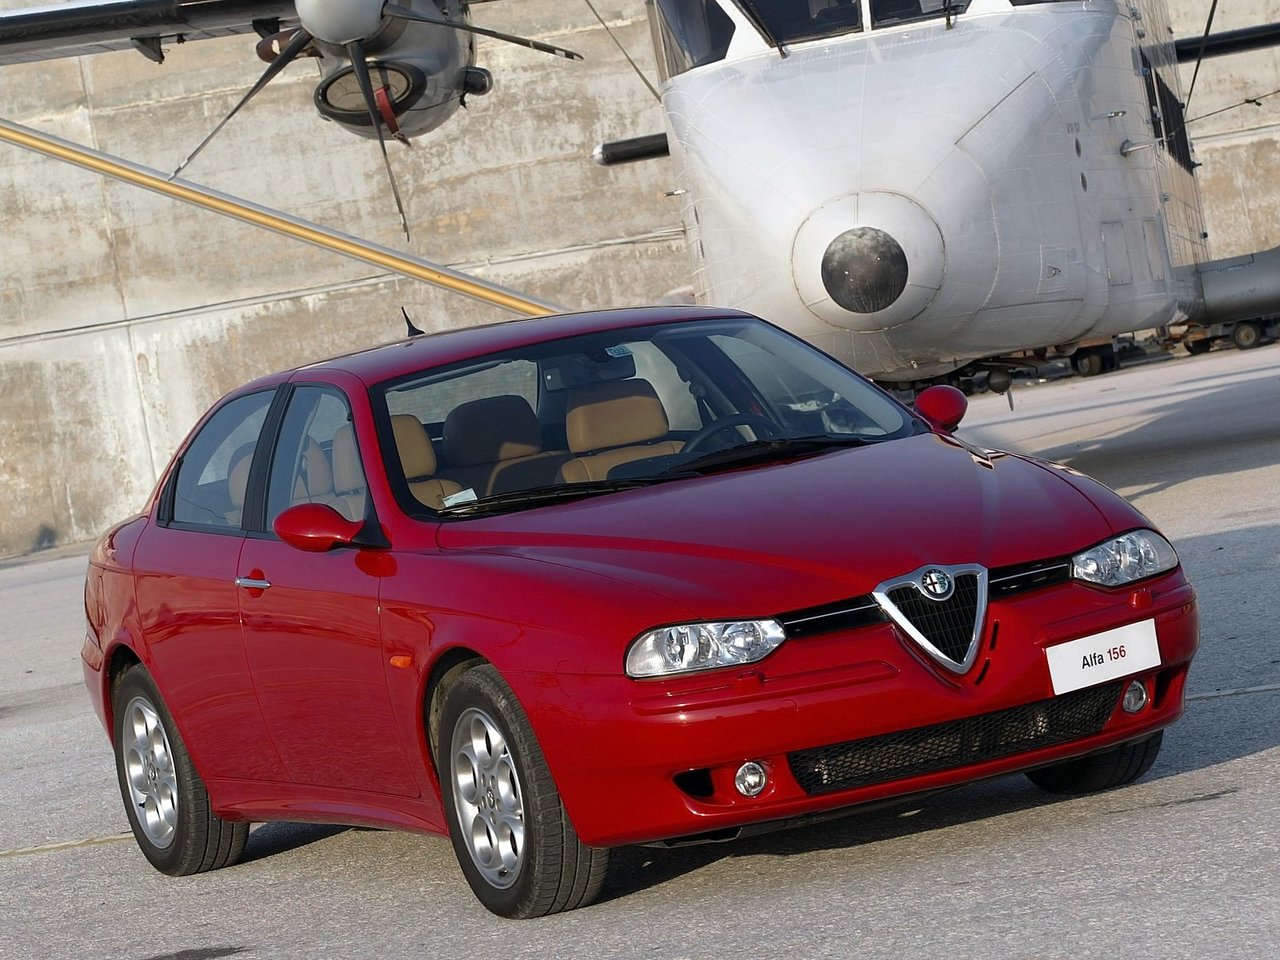 Снижаем расход Alfa Romeo 156 на топливо, устанавливаем ГБО